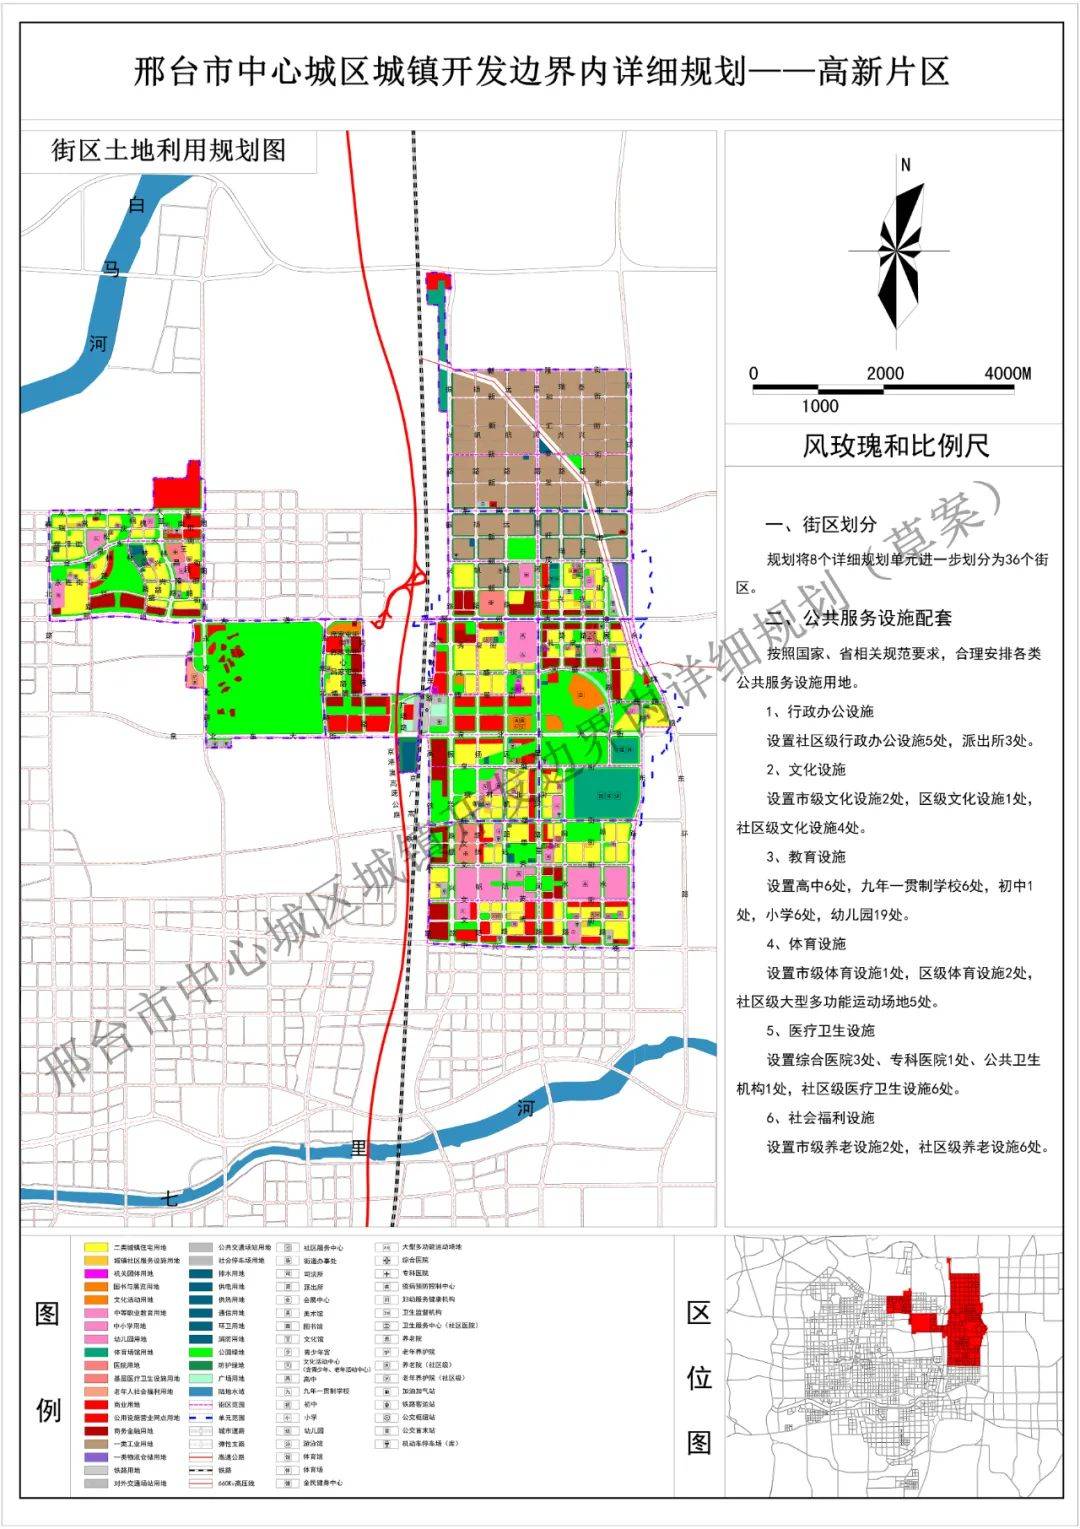 邢台市中心城区城镇开发边界规划公示